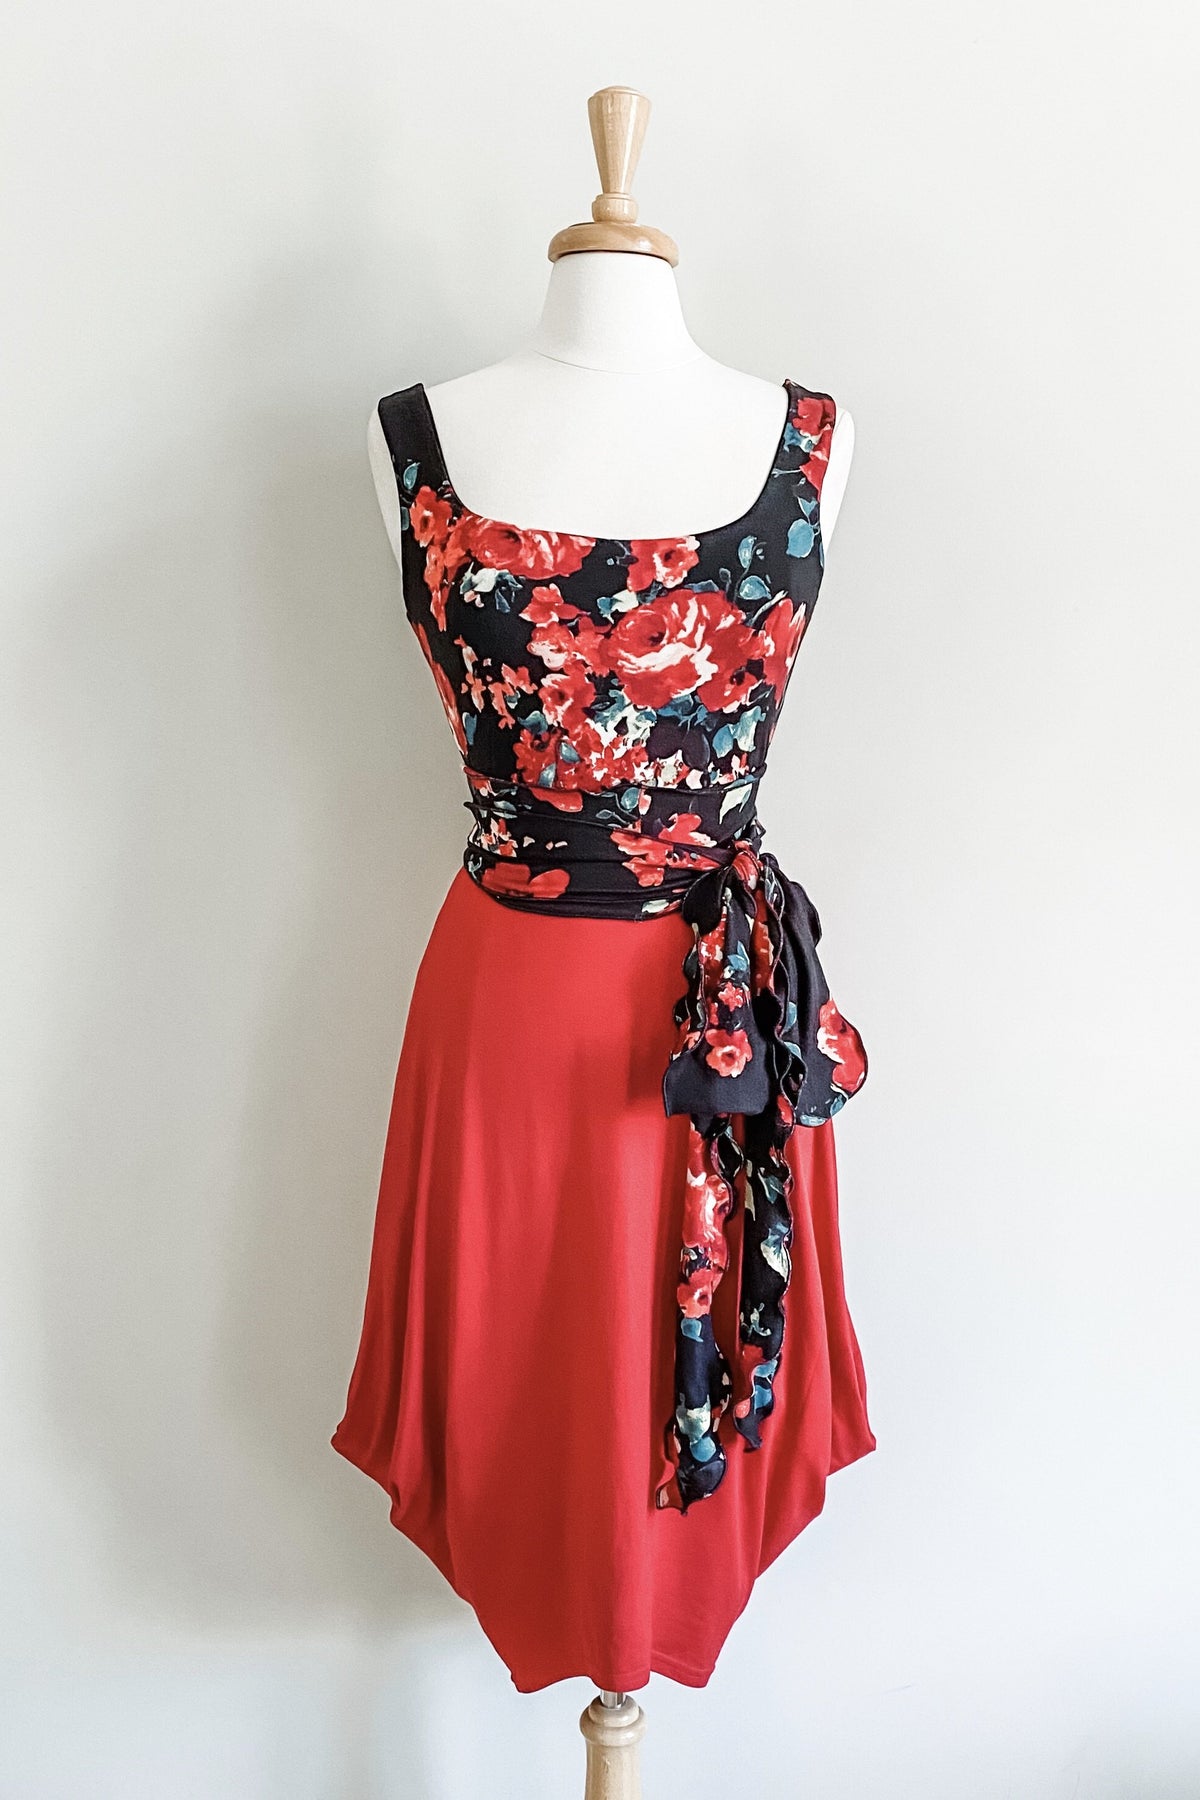 Diane Kroe - Scalloped Versatile Sash in Brushed Prints (Red Black Floral)